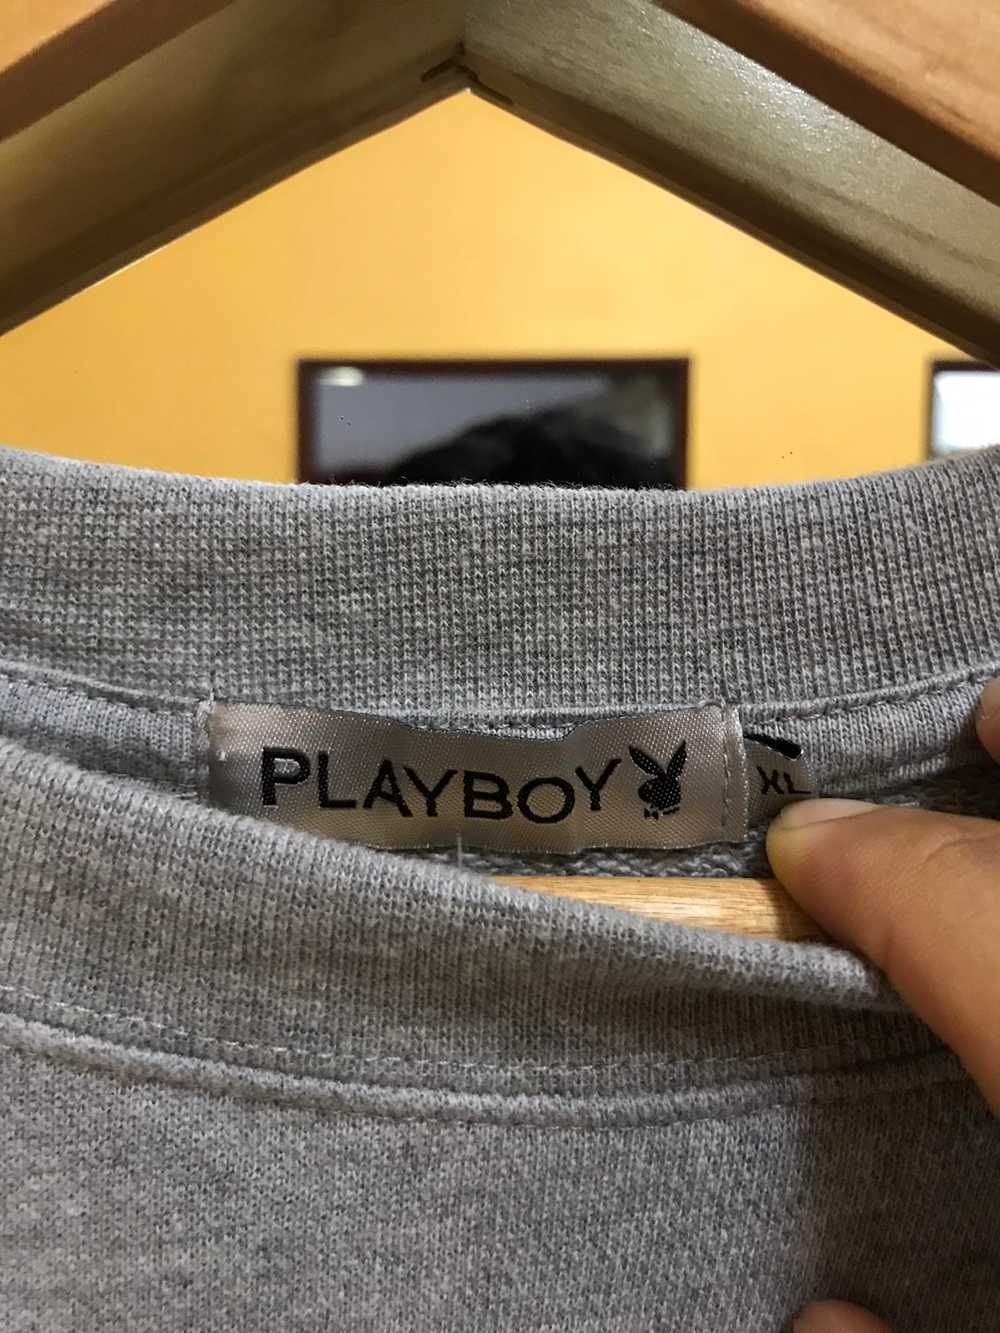 Playboy - Playboy Sweatshirt big Logo - image 6